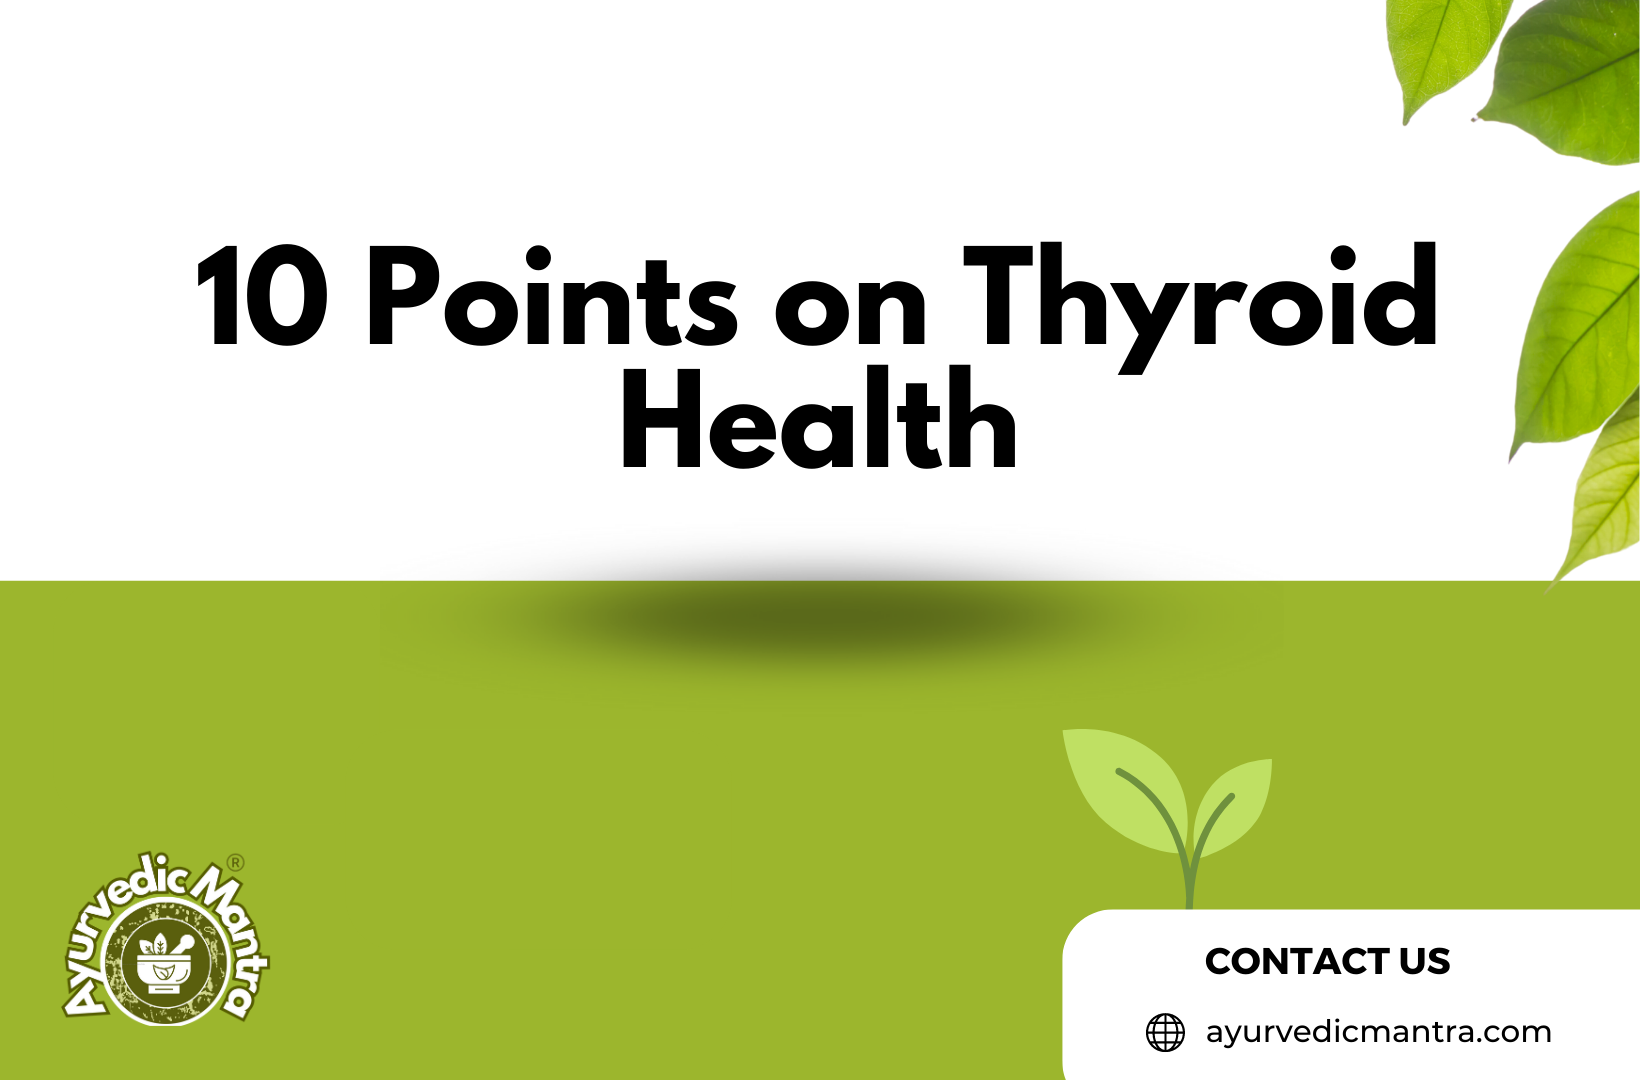 10 Points on Thyroid Health